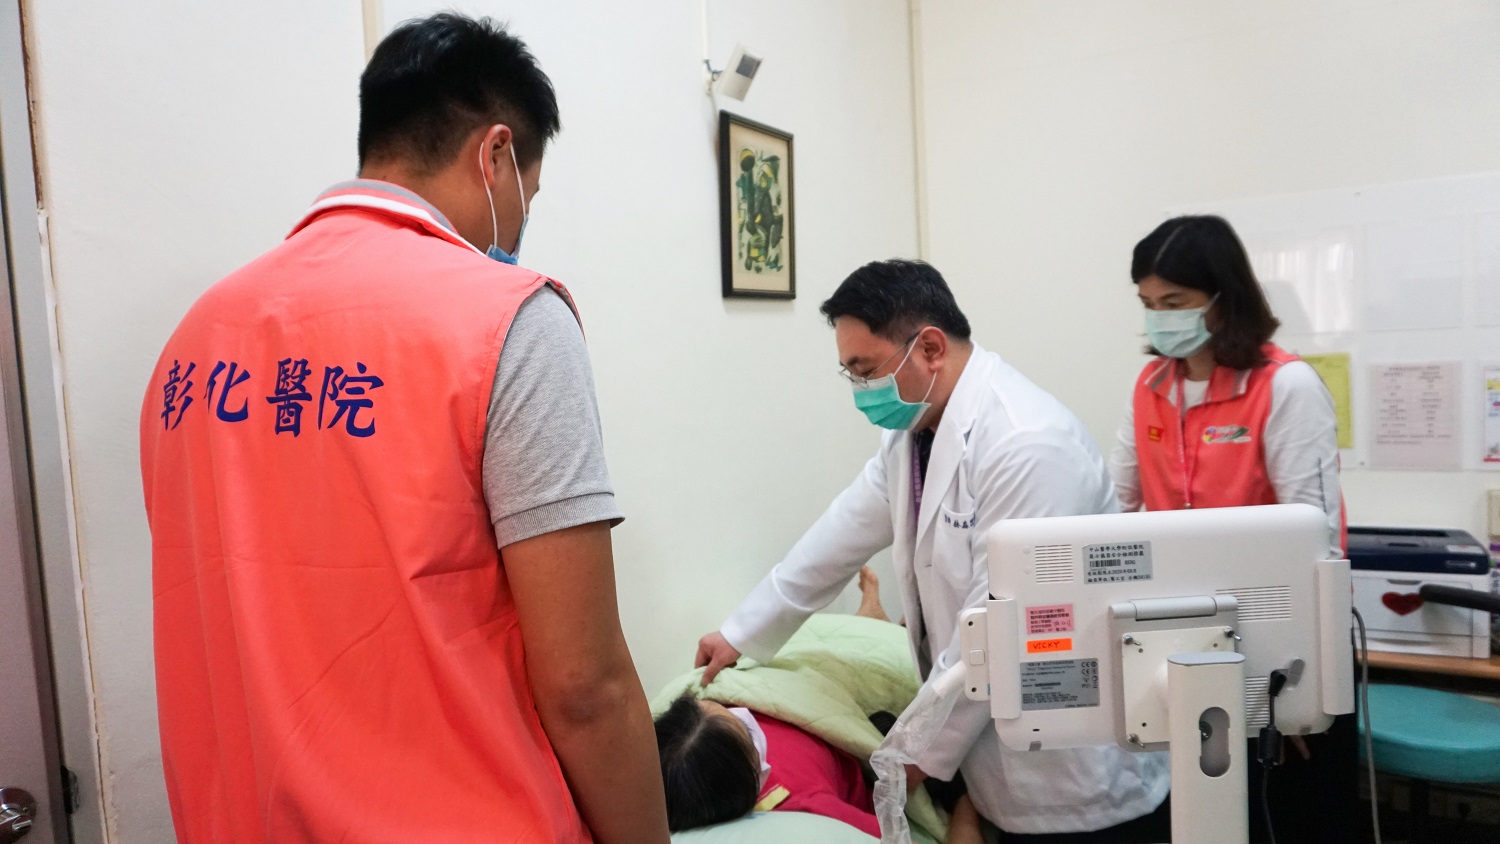 彰化醫院肝膽腸胃科醫師王棋新為病人進行超音波檢測。(記者張光雄翻攝)